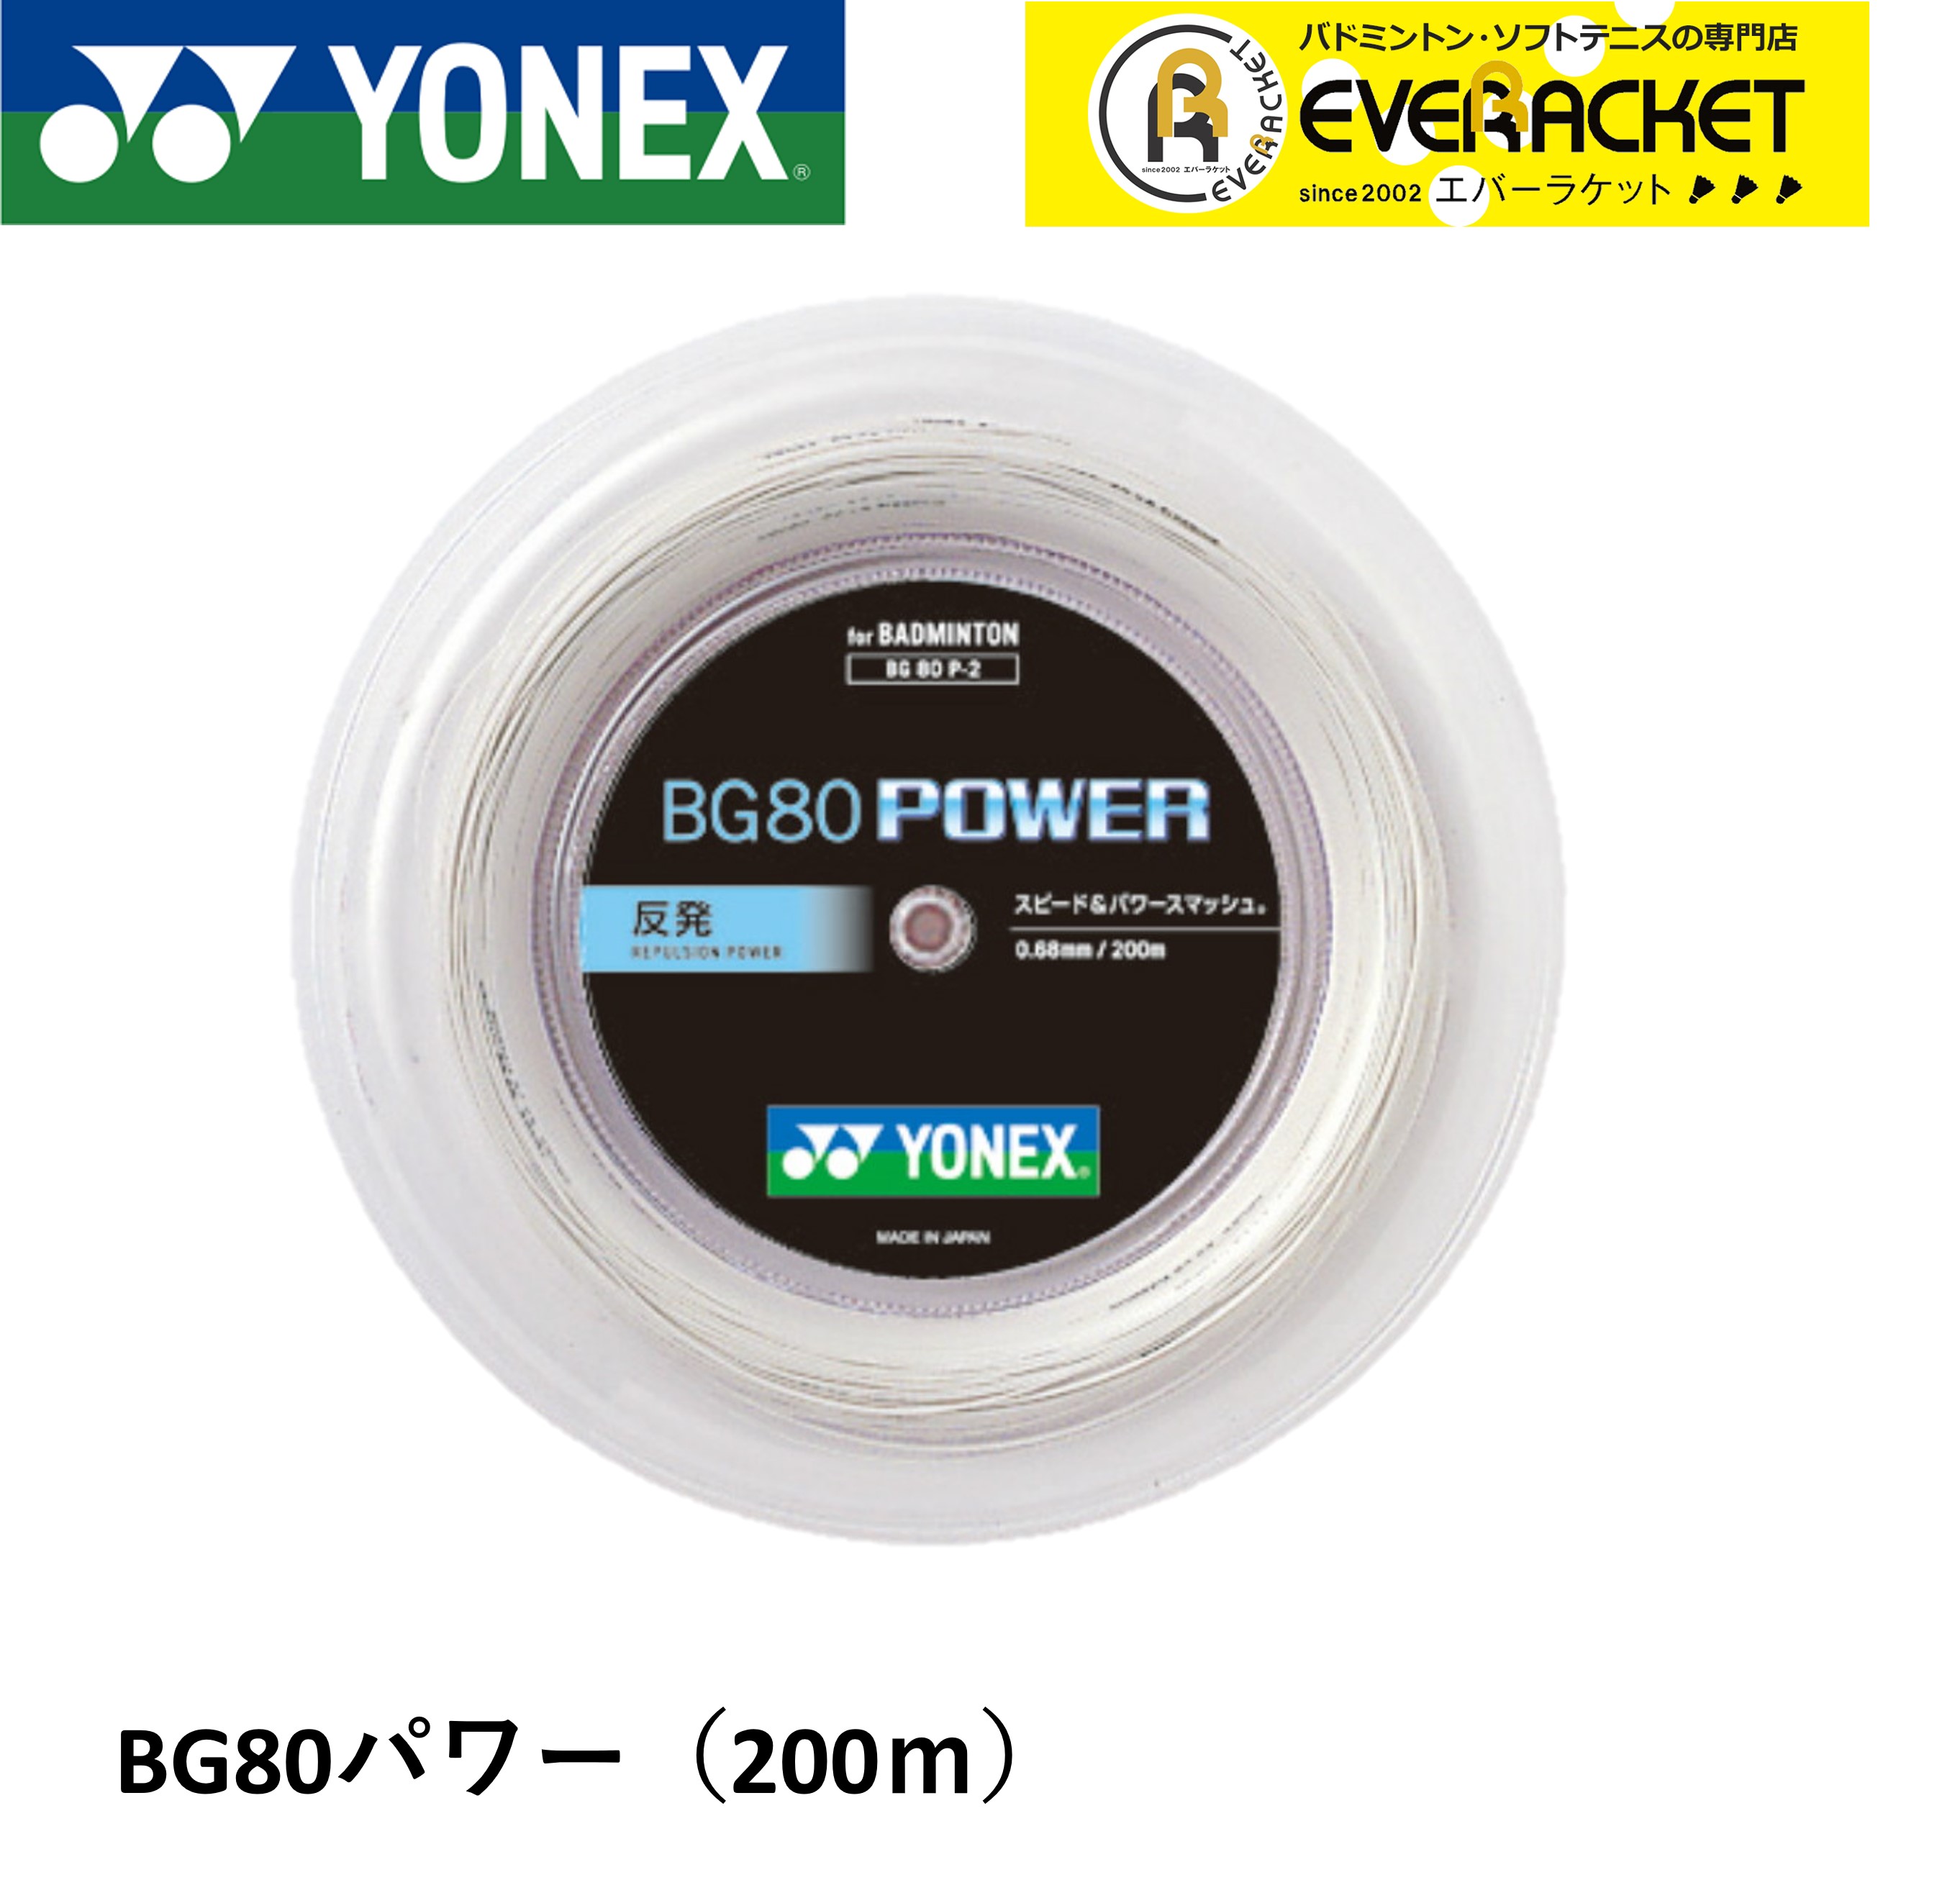 ヨネックス YONEX バドミントンストリング BG80パワー(200M) BG80P-2 バドミントン